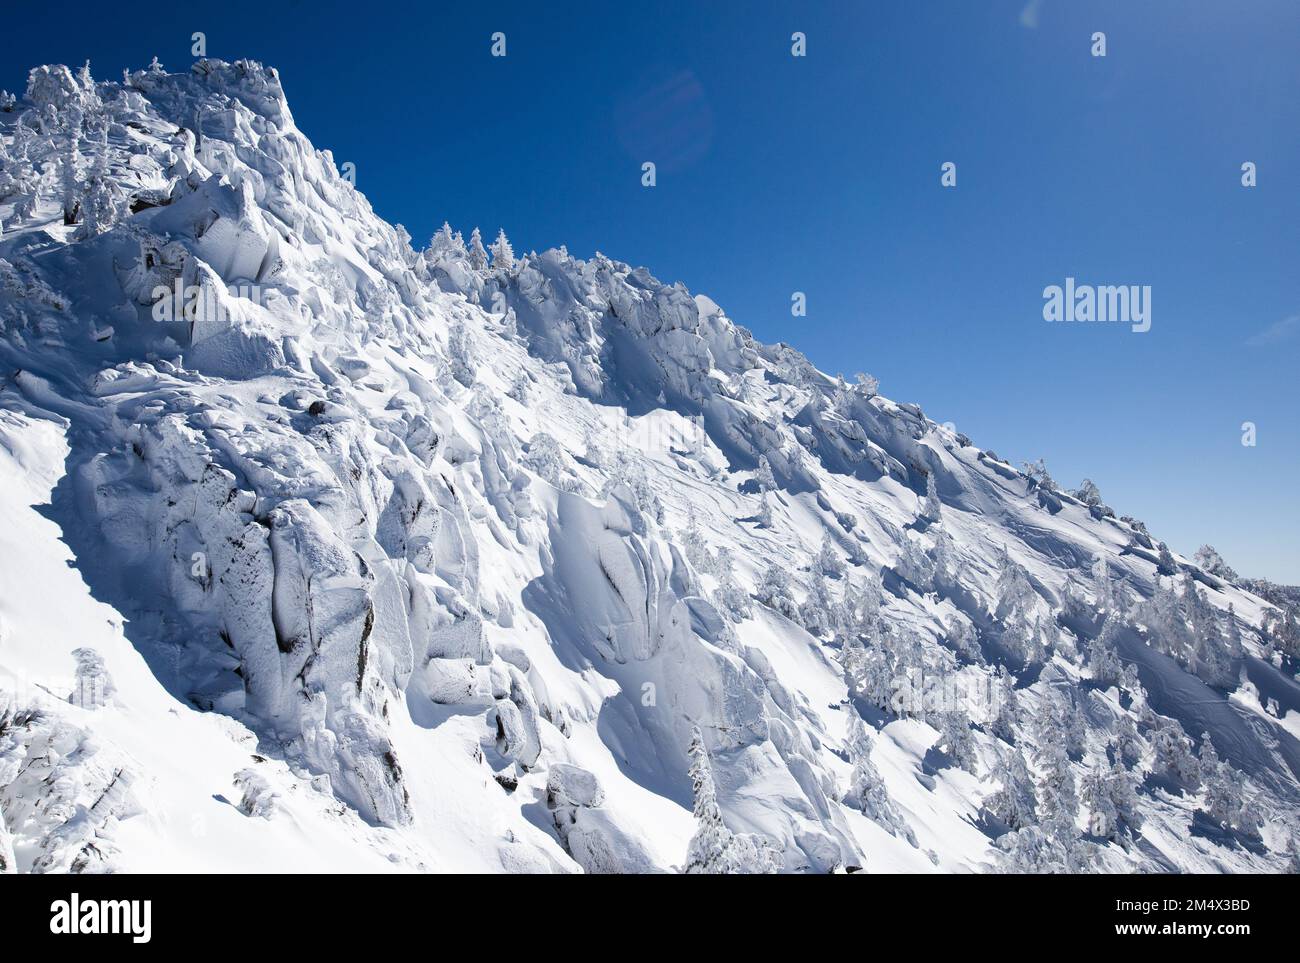 Neige fraîche sur les hauts sommets de montagne, un magnifique paysage d'hiver. Lake Tahoe, Californie. Banque D'Images